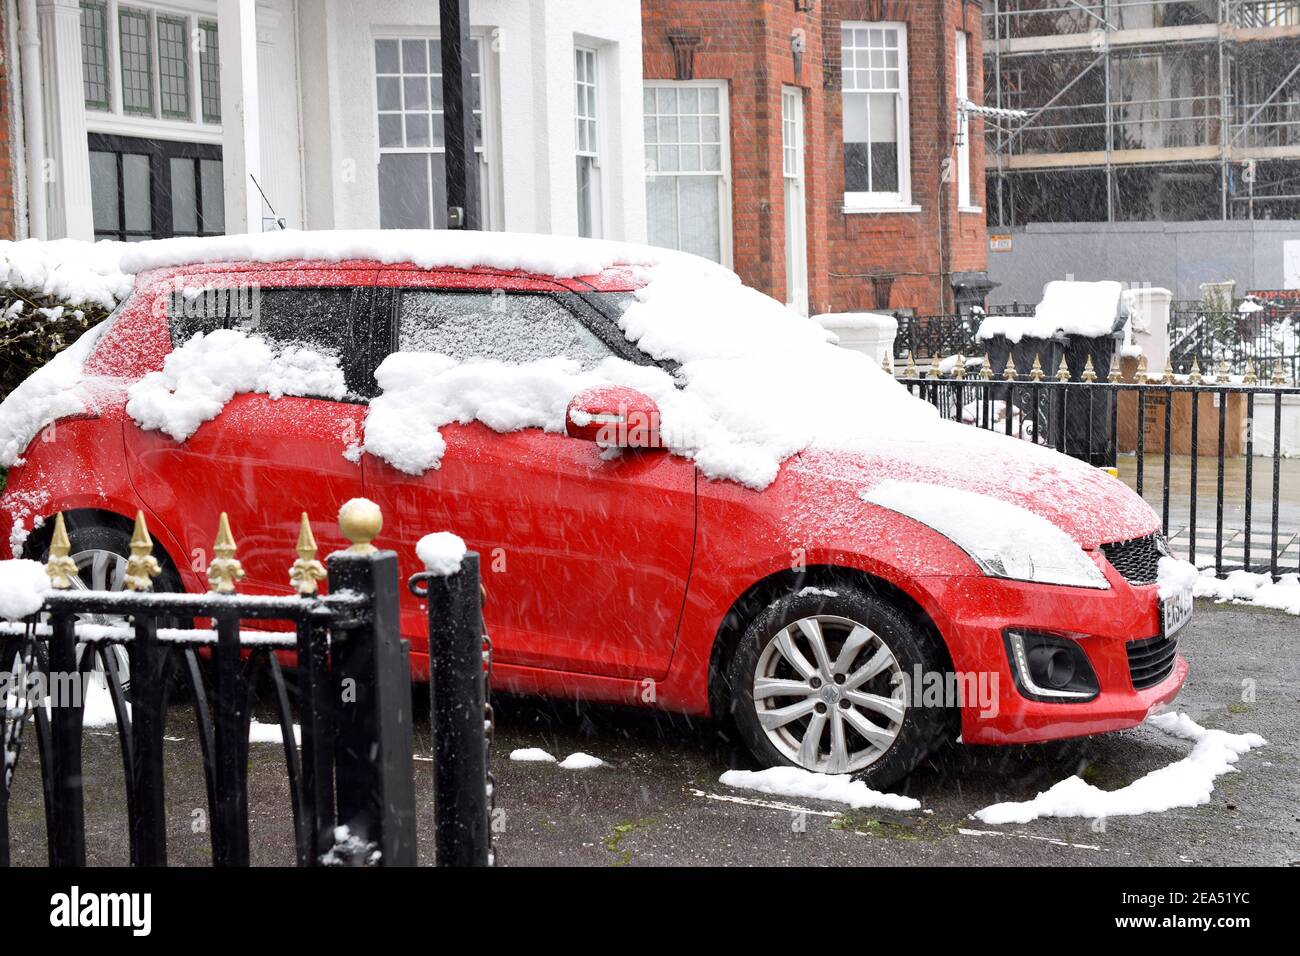 Vue sur la rue avec une voiture rouge couverte de neige sur la rue anglaise. Banque D'Images